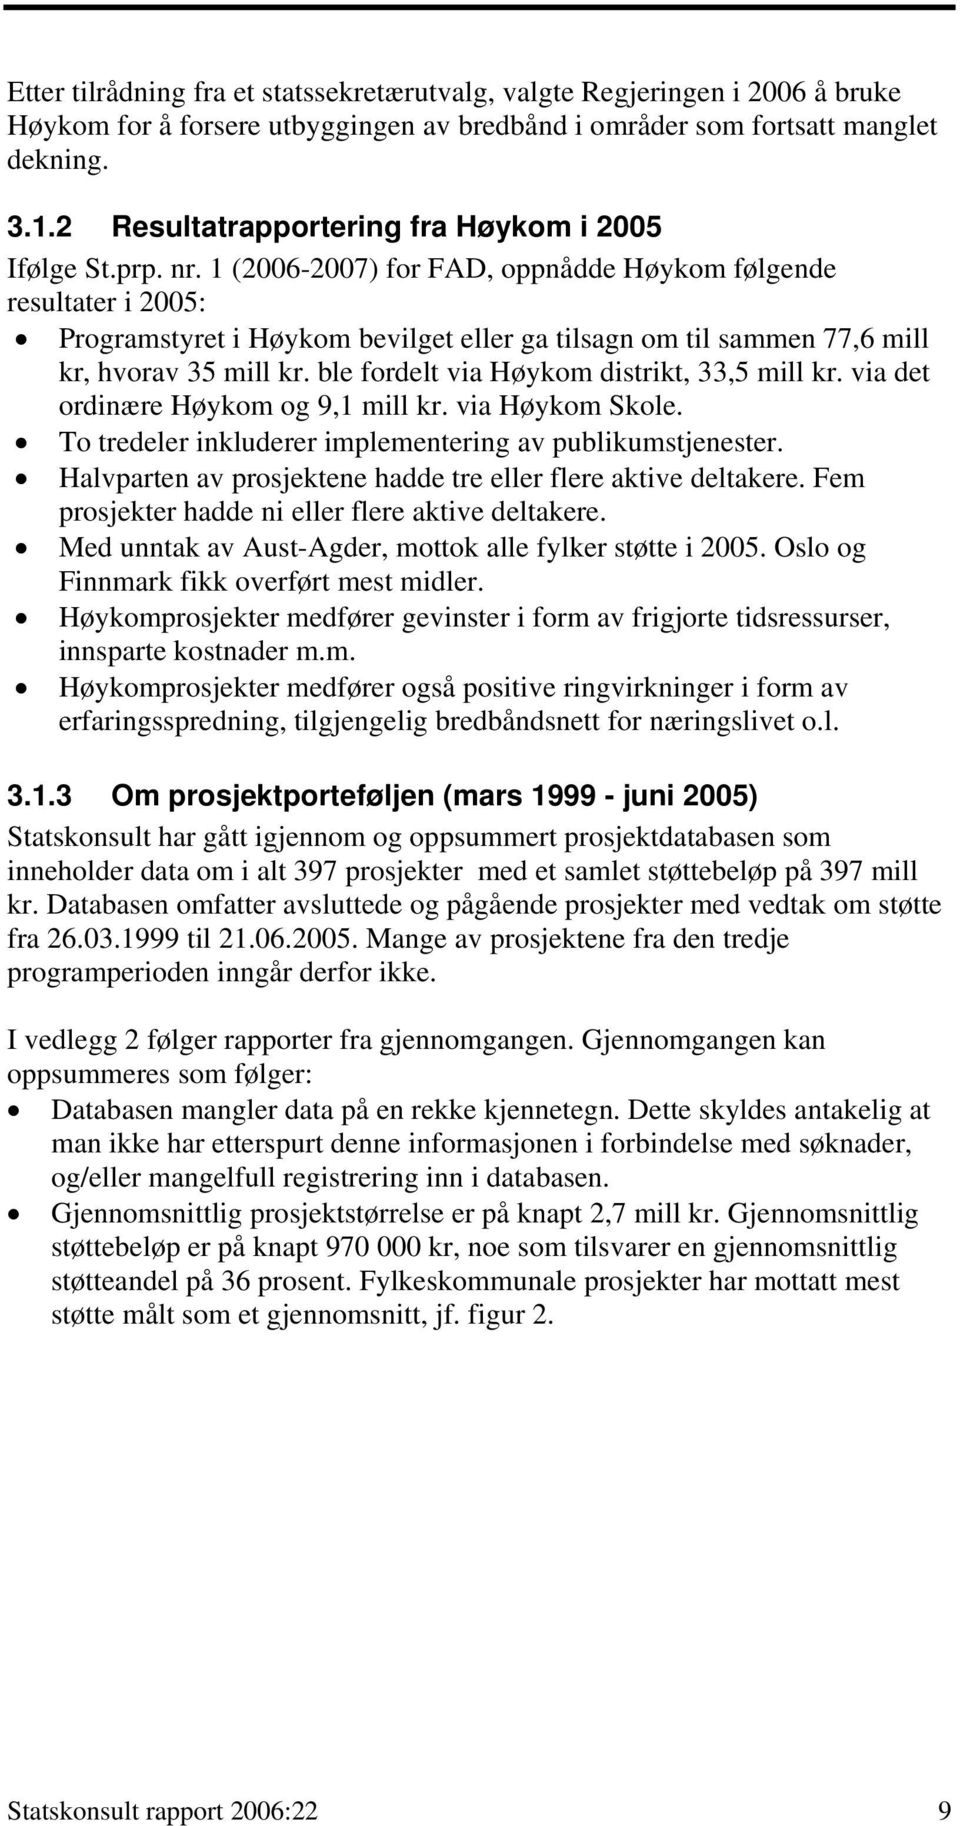 1 (2006-2007) for FAD, oppnådde Høykom følgende resultater i 2005: Programstyret i Høykom bevilget eller ga tilsagn om til sammen 77,6 mill kr, hvorav 35 mill kr.